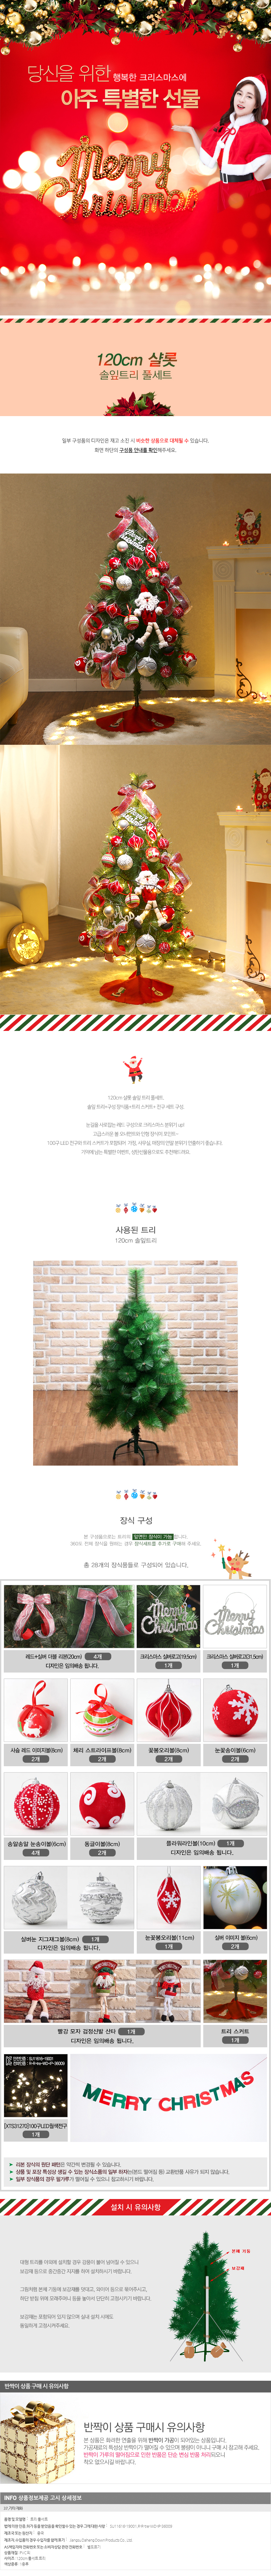 120cm 솦잎 트리풀세트/초등학교 성탄 크리스마스장식